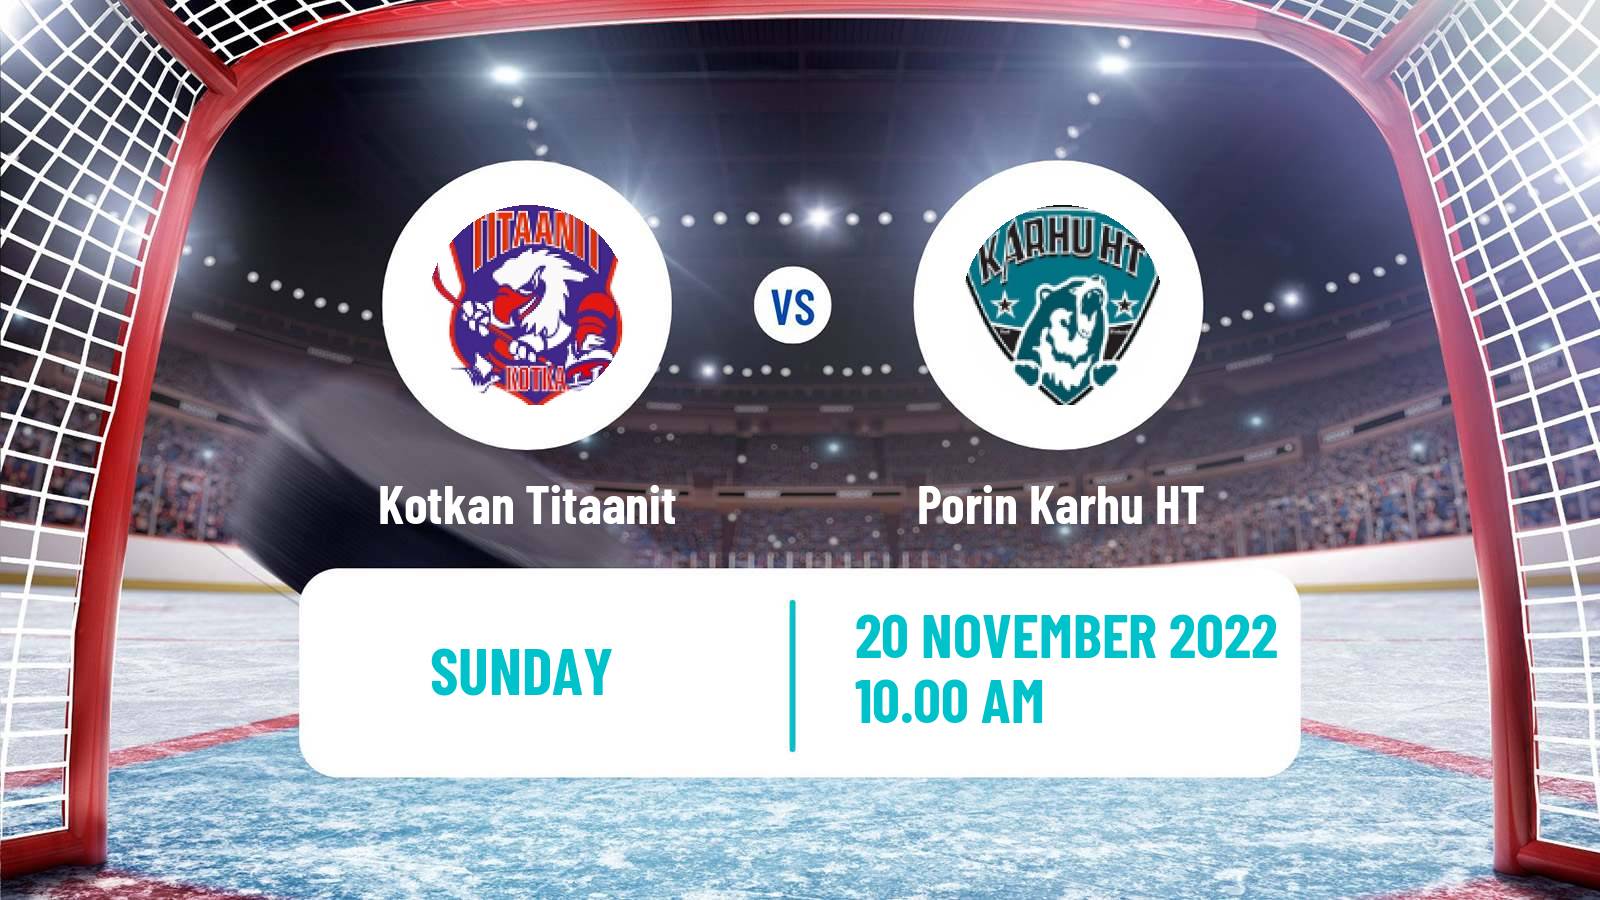 Hockey Finnish Suomi-sarja Kotkan Titaanit - Porin Karhu HT